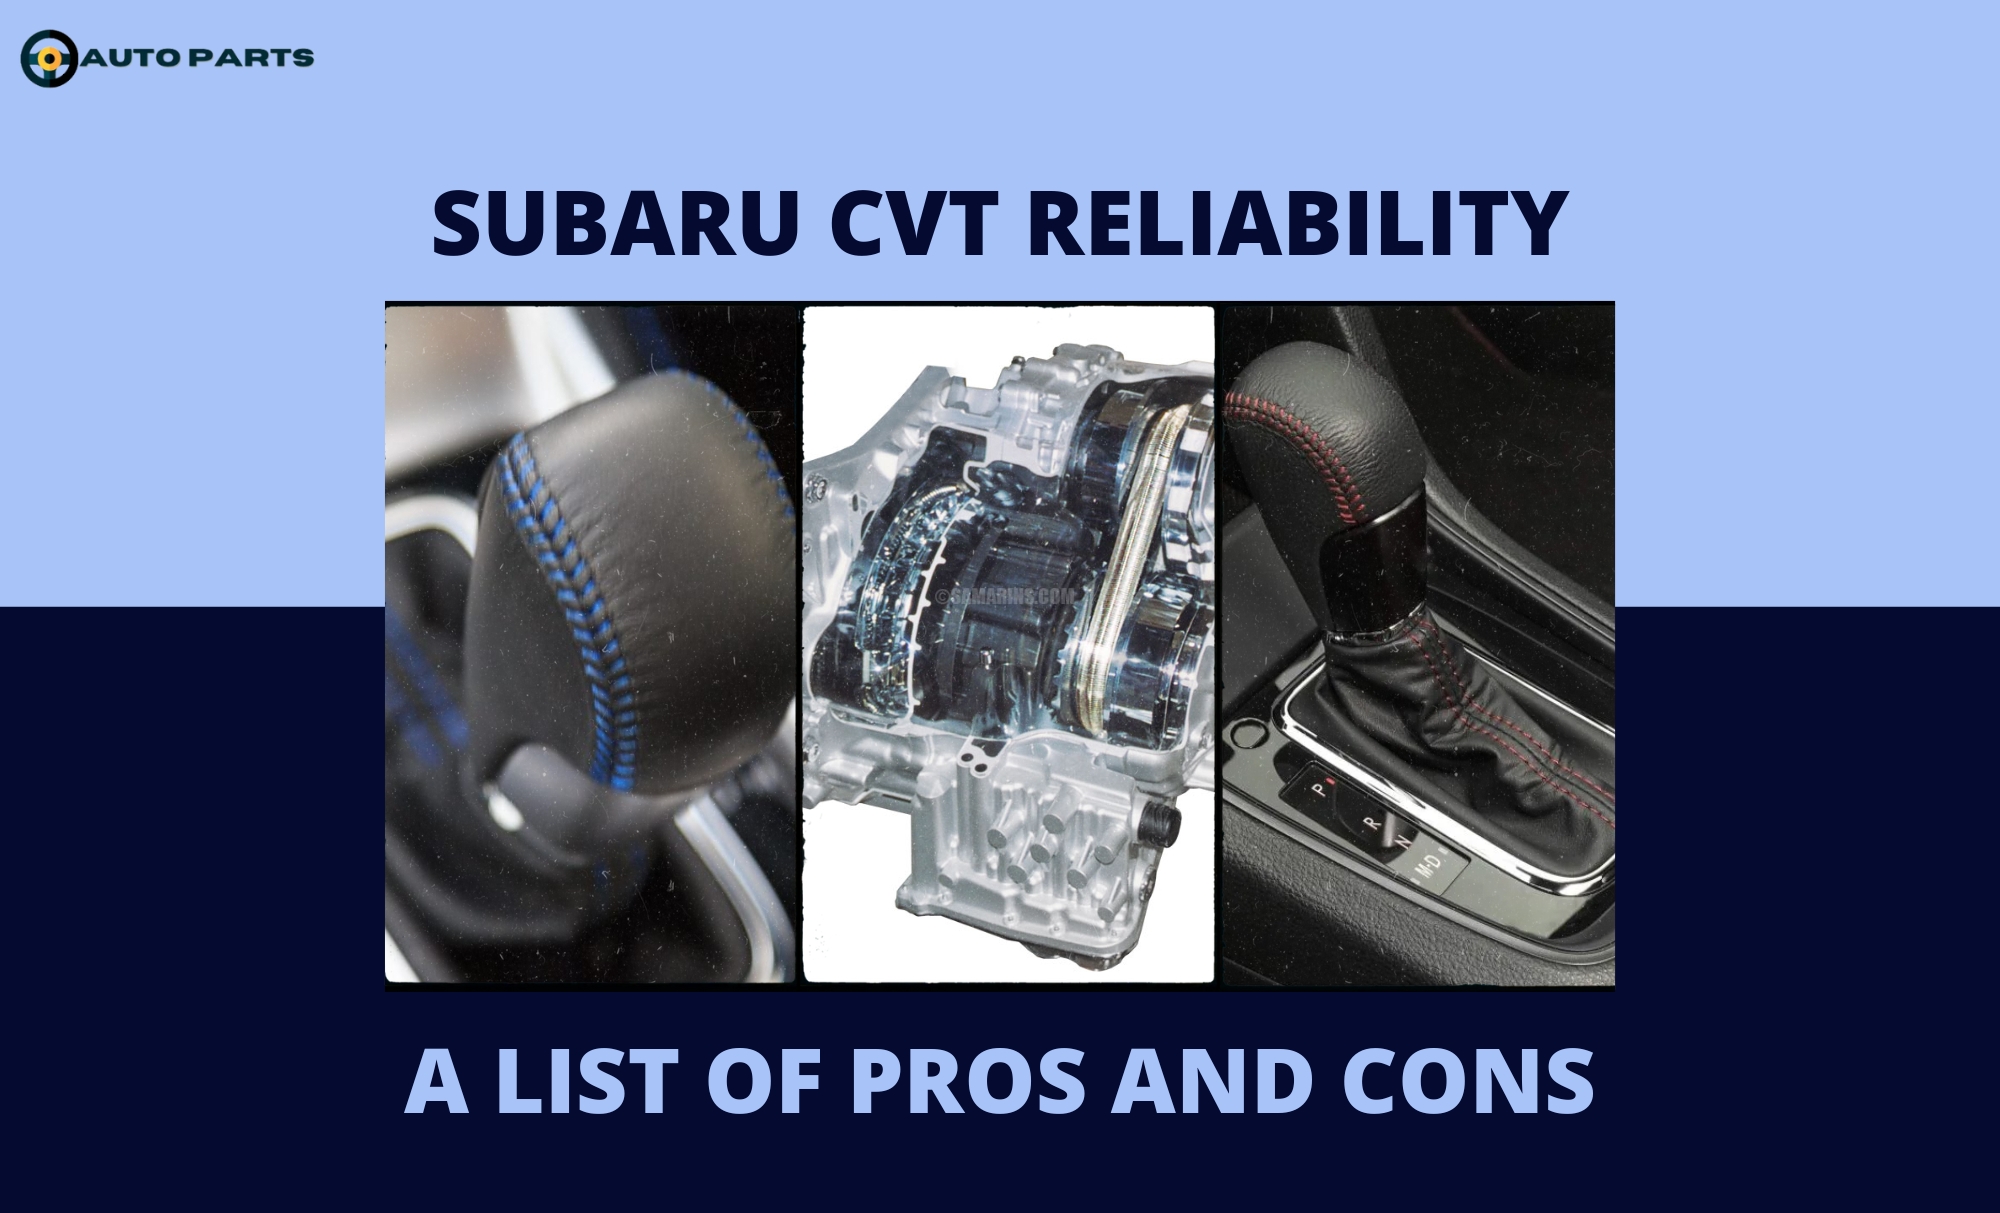 How reliable are Subaru CVT transmissions Subaru CVT reliability